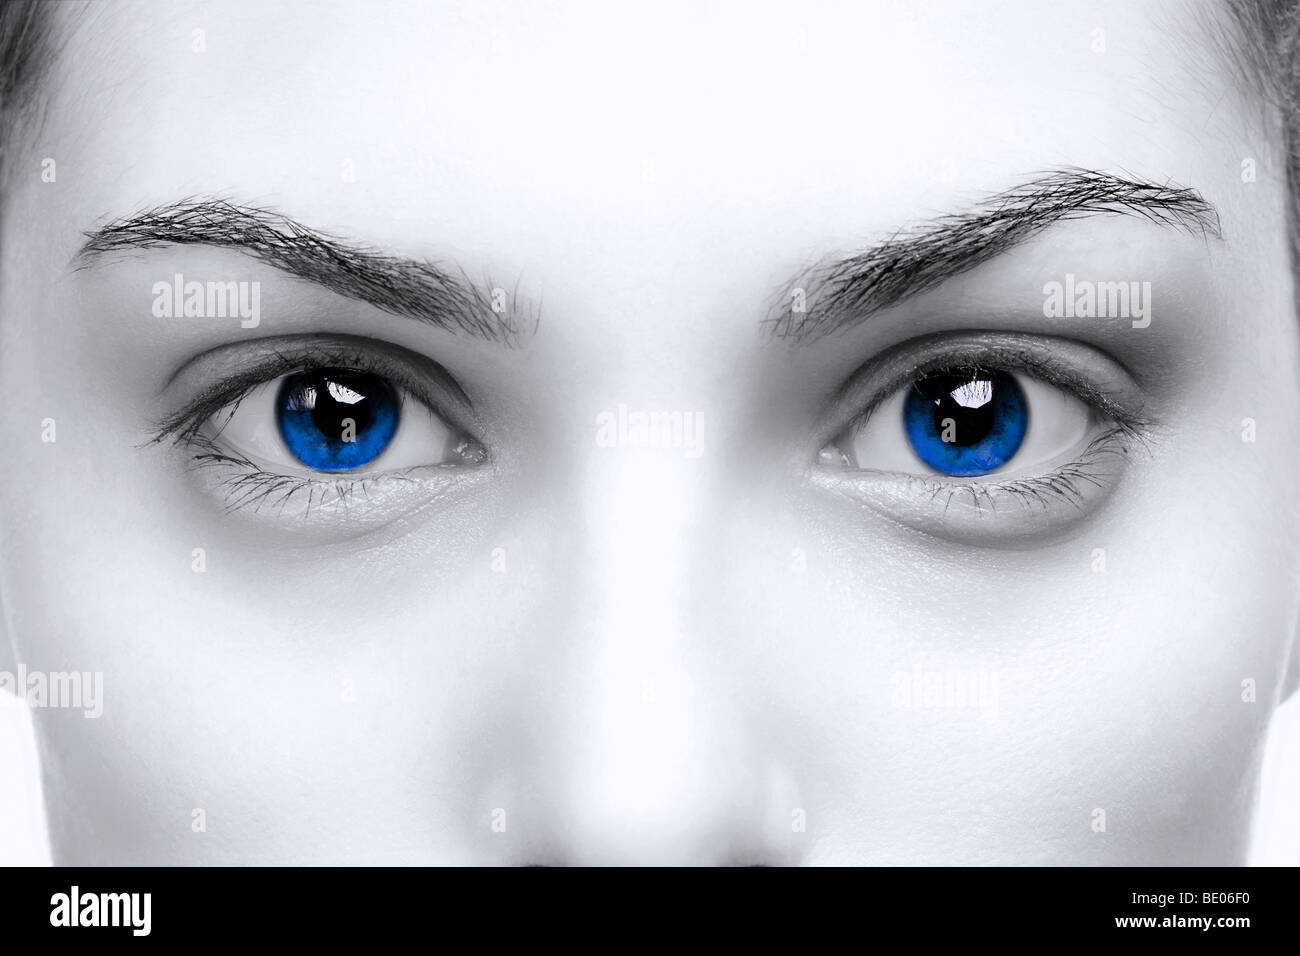 Foto von einem schönen weiblichen Farbe getönt, markieren Sie ihre leuchtenden blauen Augen Stockfoto